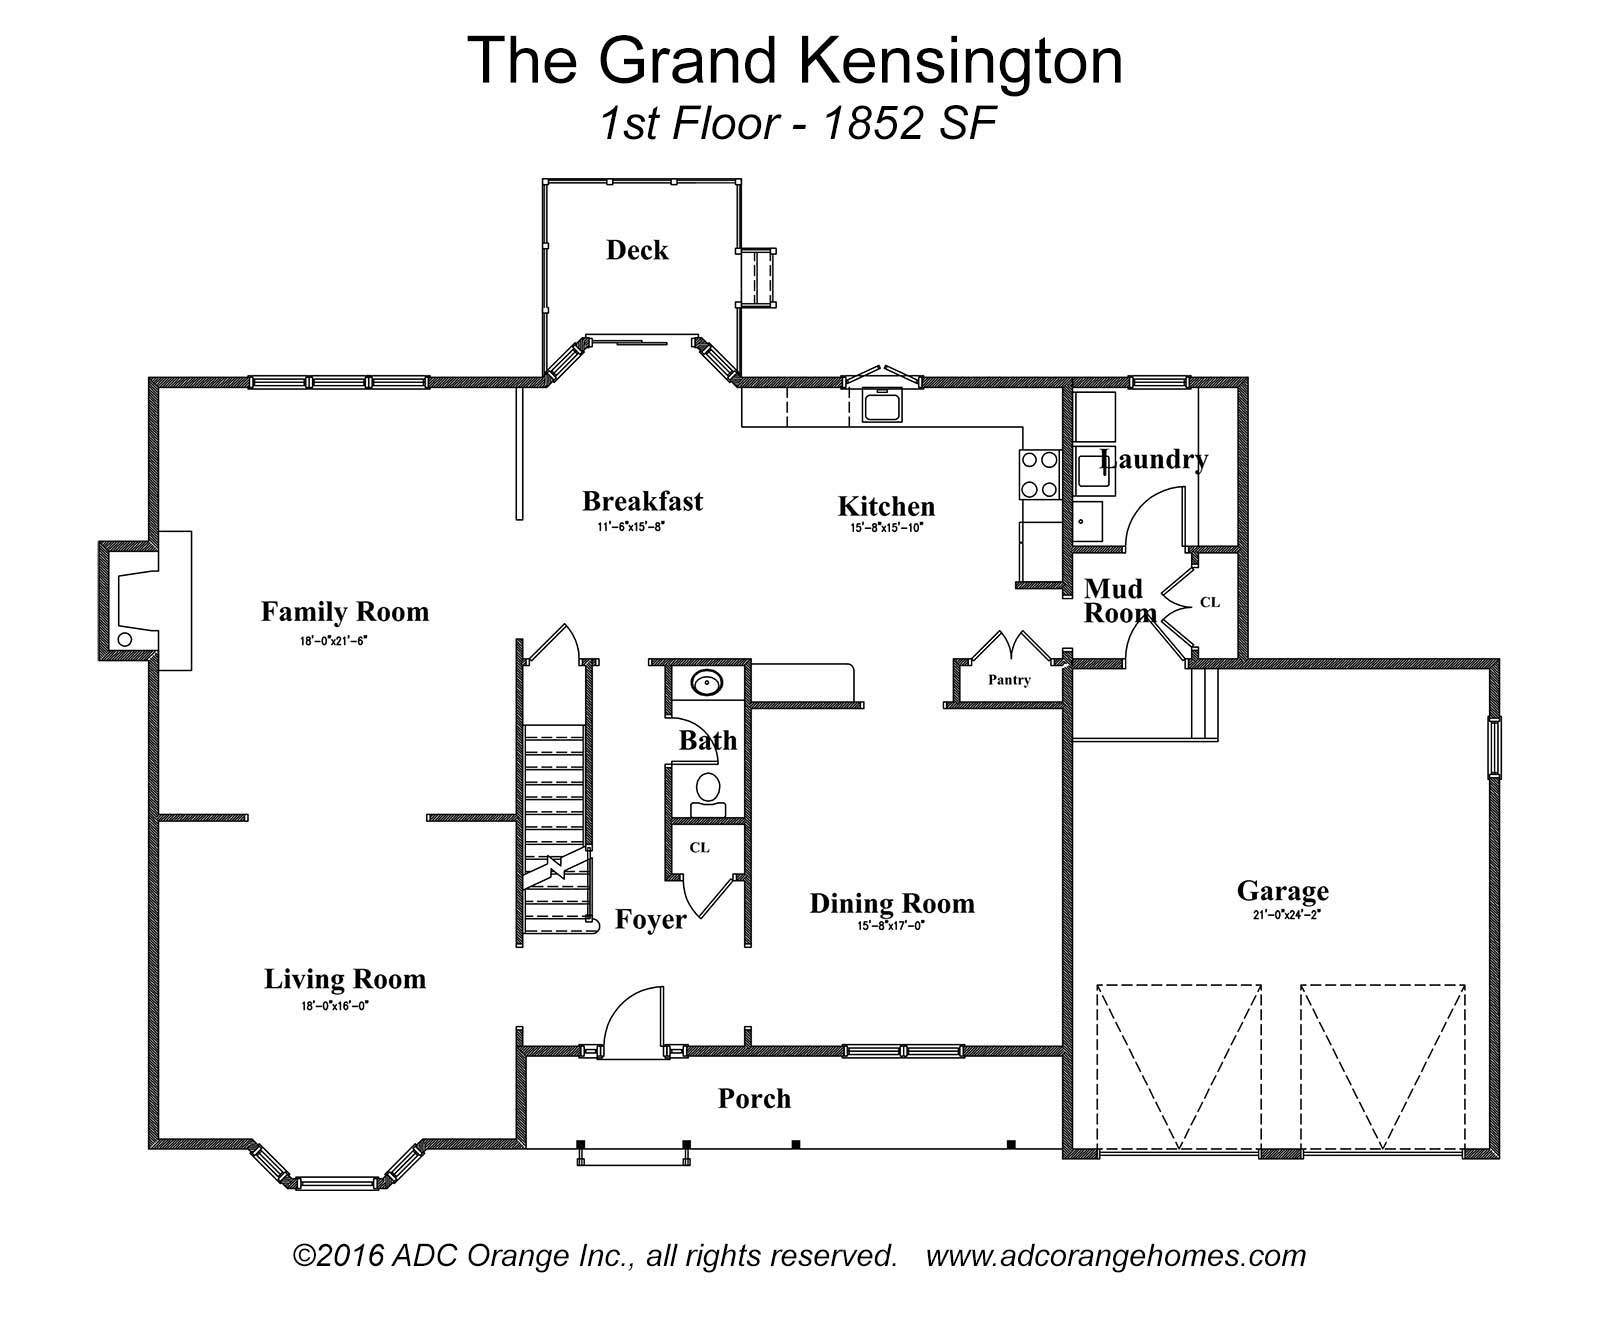 1st Floor Plan for Grand Kensington - New Home in Orange County, New York